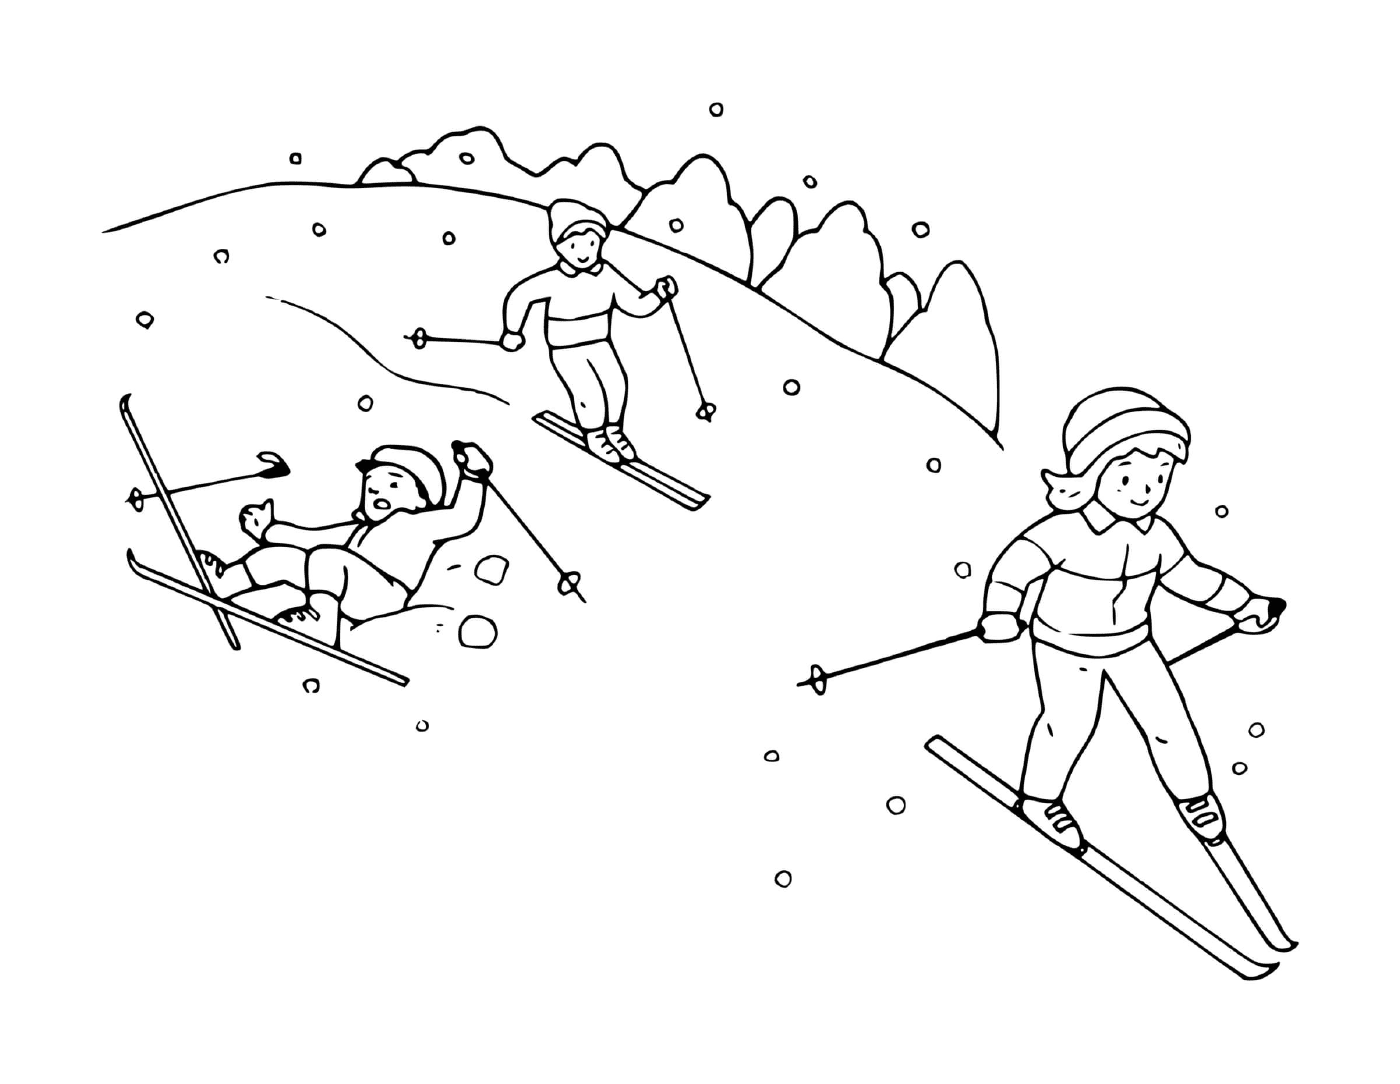  Familia teniendo diversión esquiando juntos 